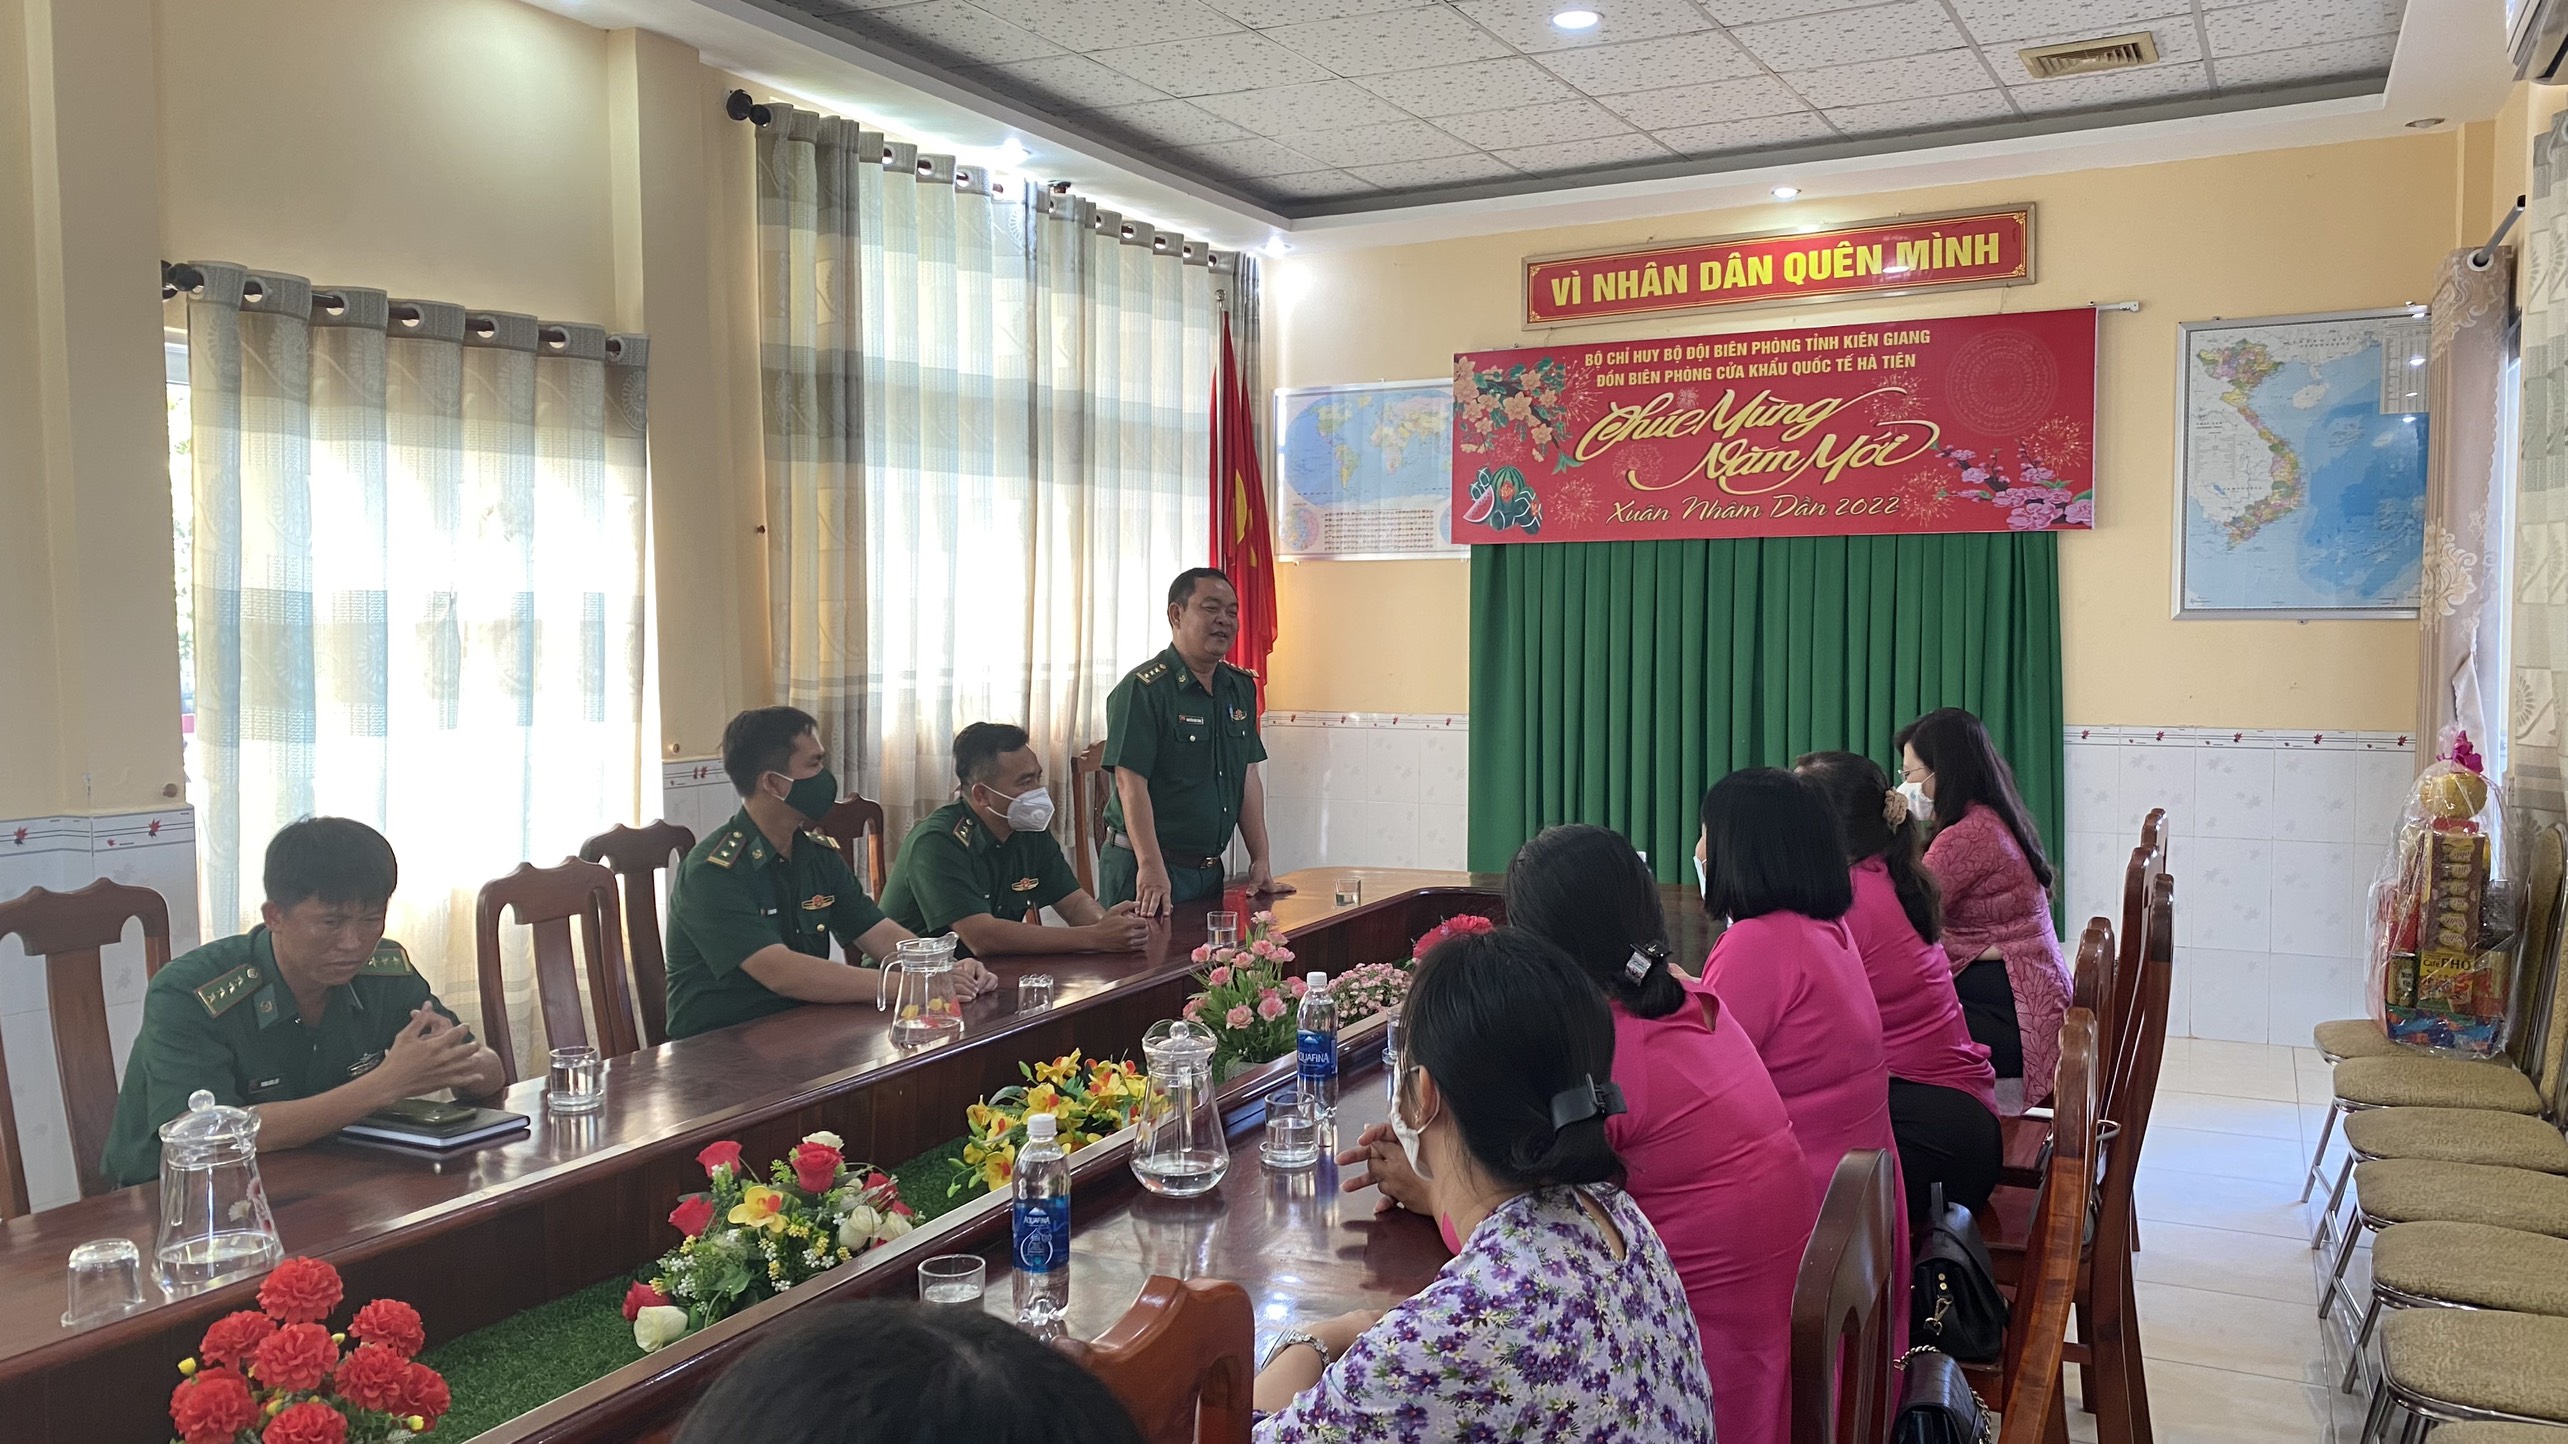 Đồng chí Thượng tá Nguyễn Văn Tùng làm việc với các đoàn thể  ở địa phương